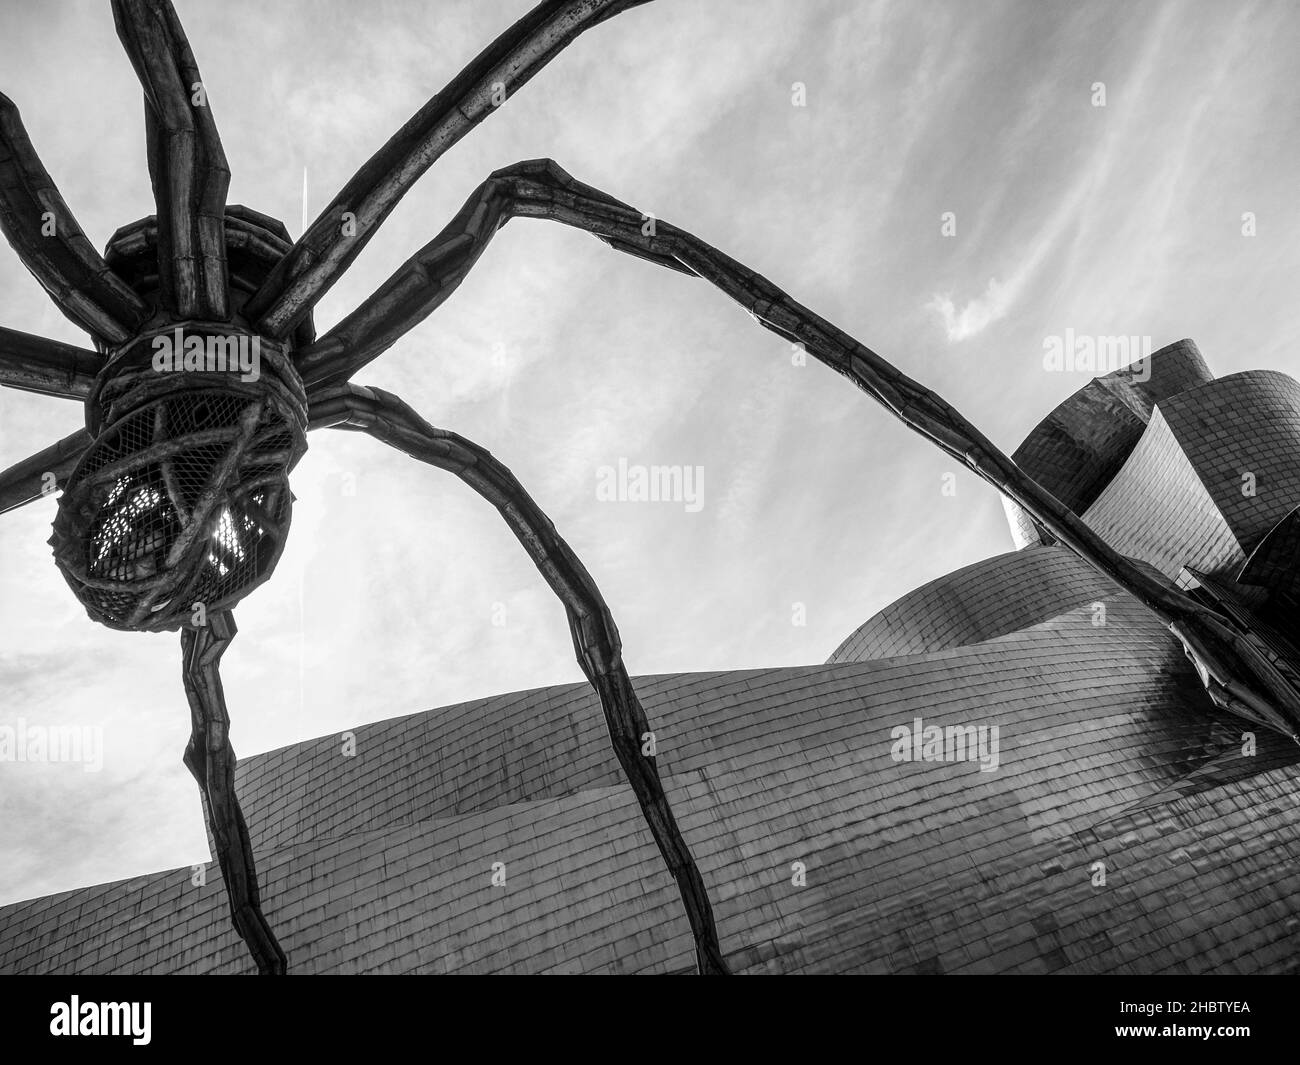 Bilbao, pays basque, Espagne.Septembre 2017.Mamman, la sculpture d'une araignée de l'artiste Louise Bourgeois, devant le Musée d'Art Banque D'Images